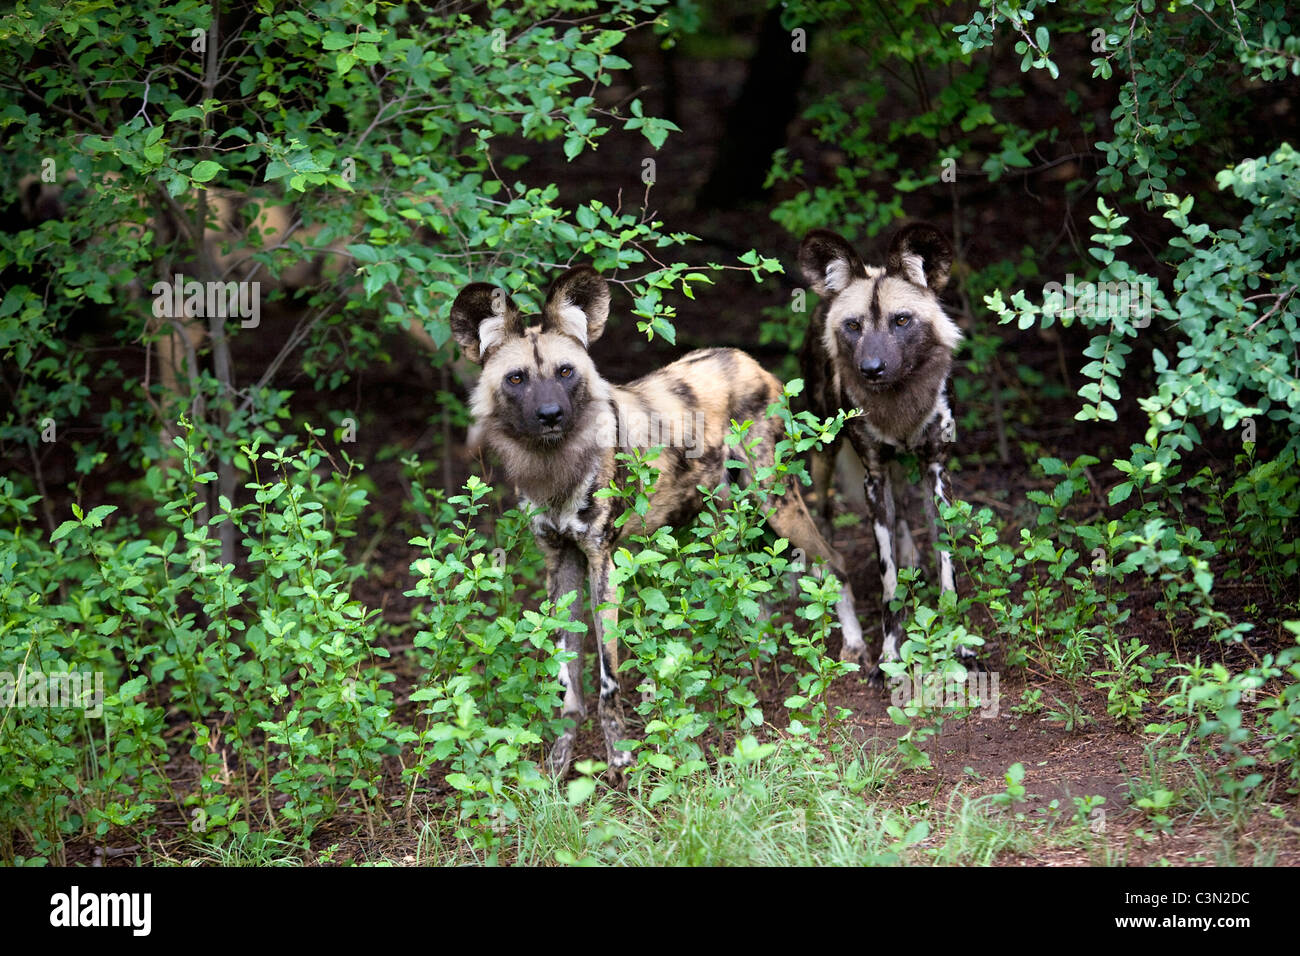 Sud Africa, Pretoria. Due Paesi africani cane selvatico, dipinse anche cane da caccia, Lycaon pictus. Cattività. Foto Stock